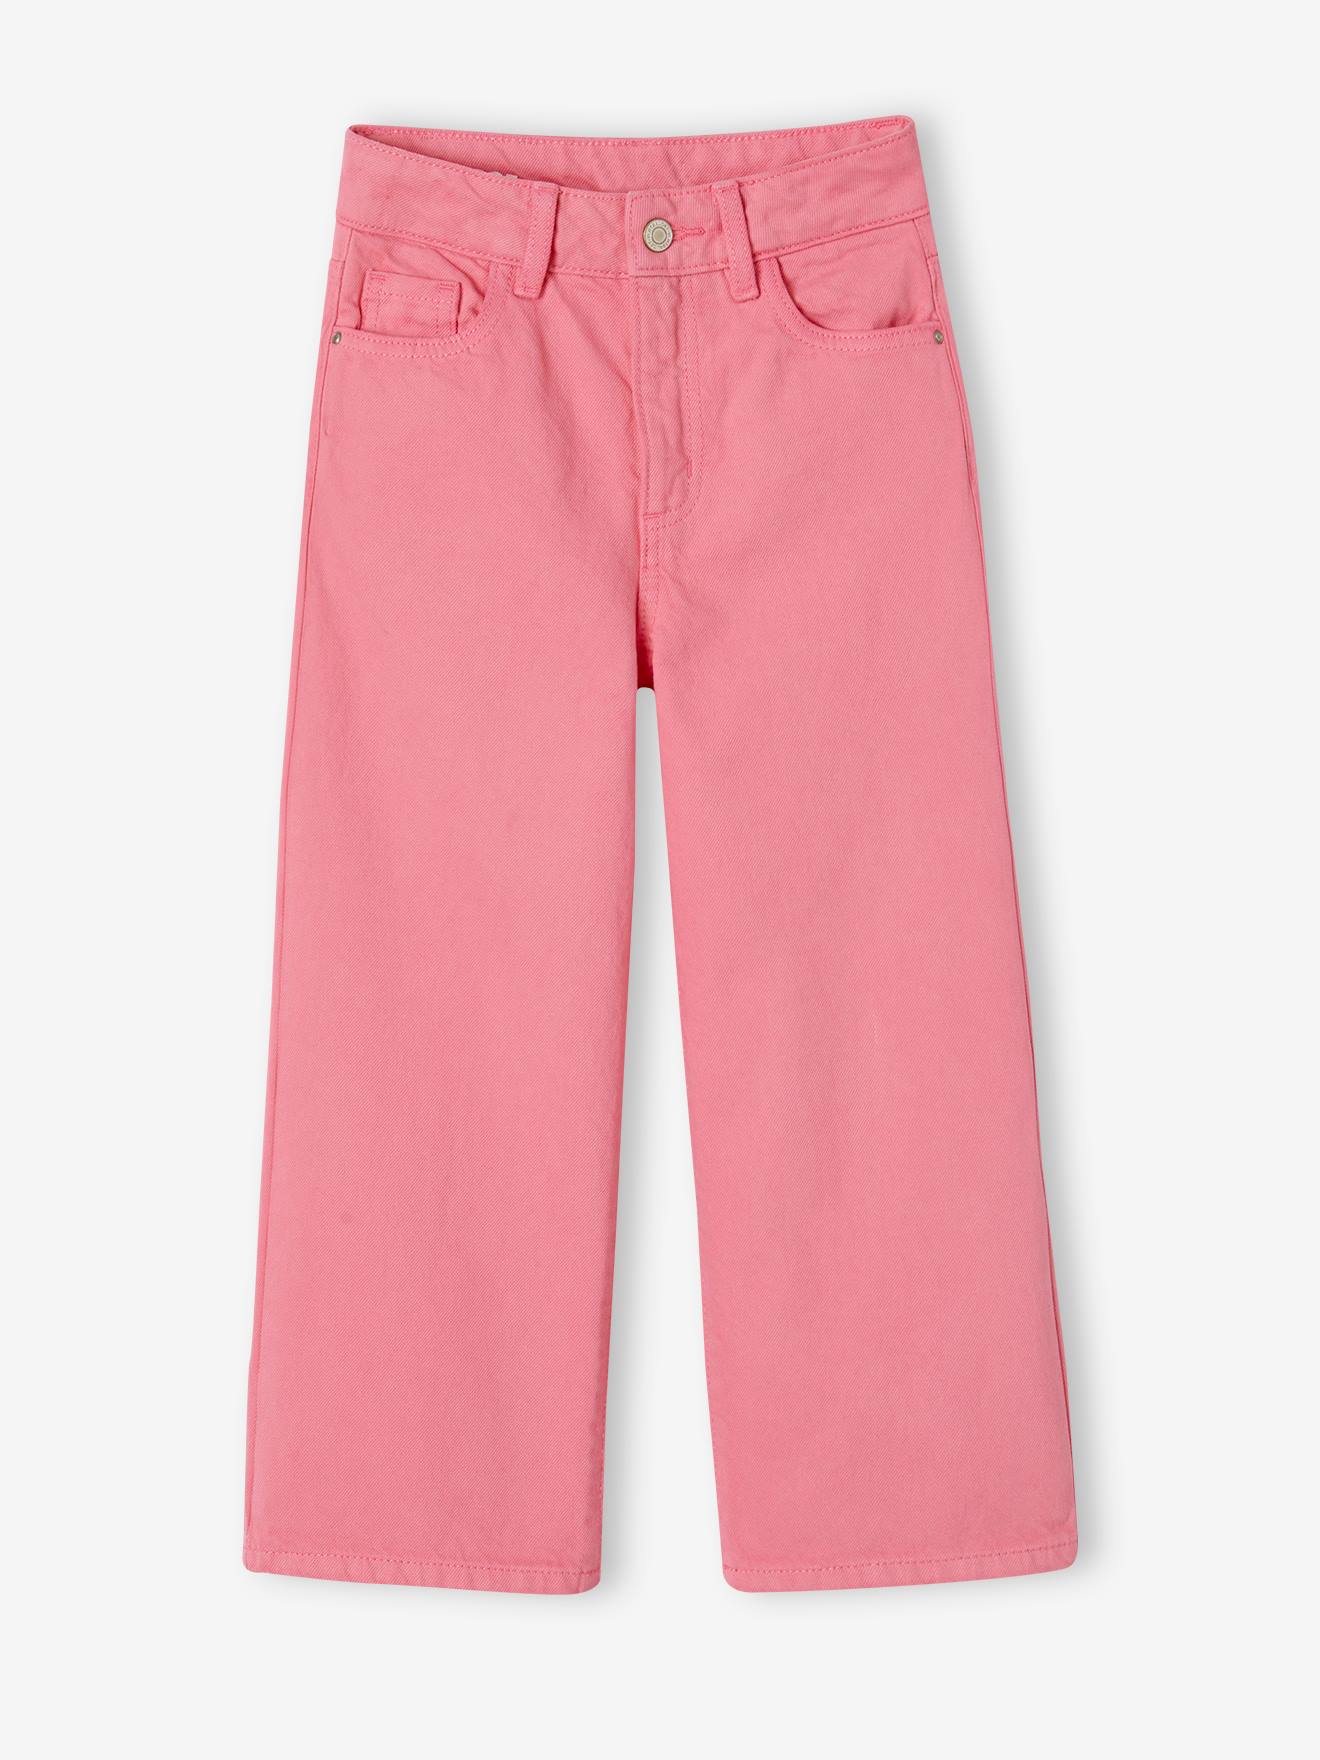 VERTBAUDET Pantalón ancho para niña rosa chicle